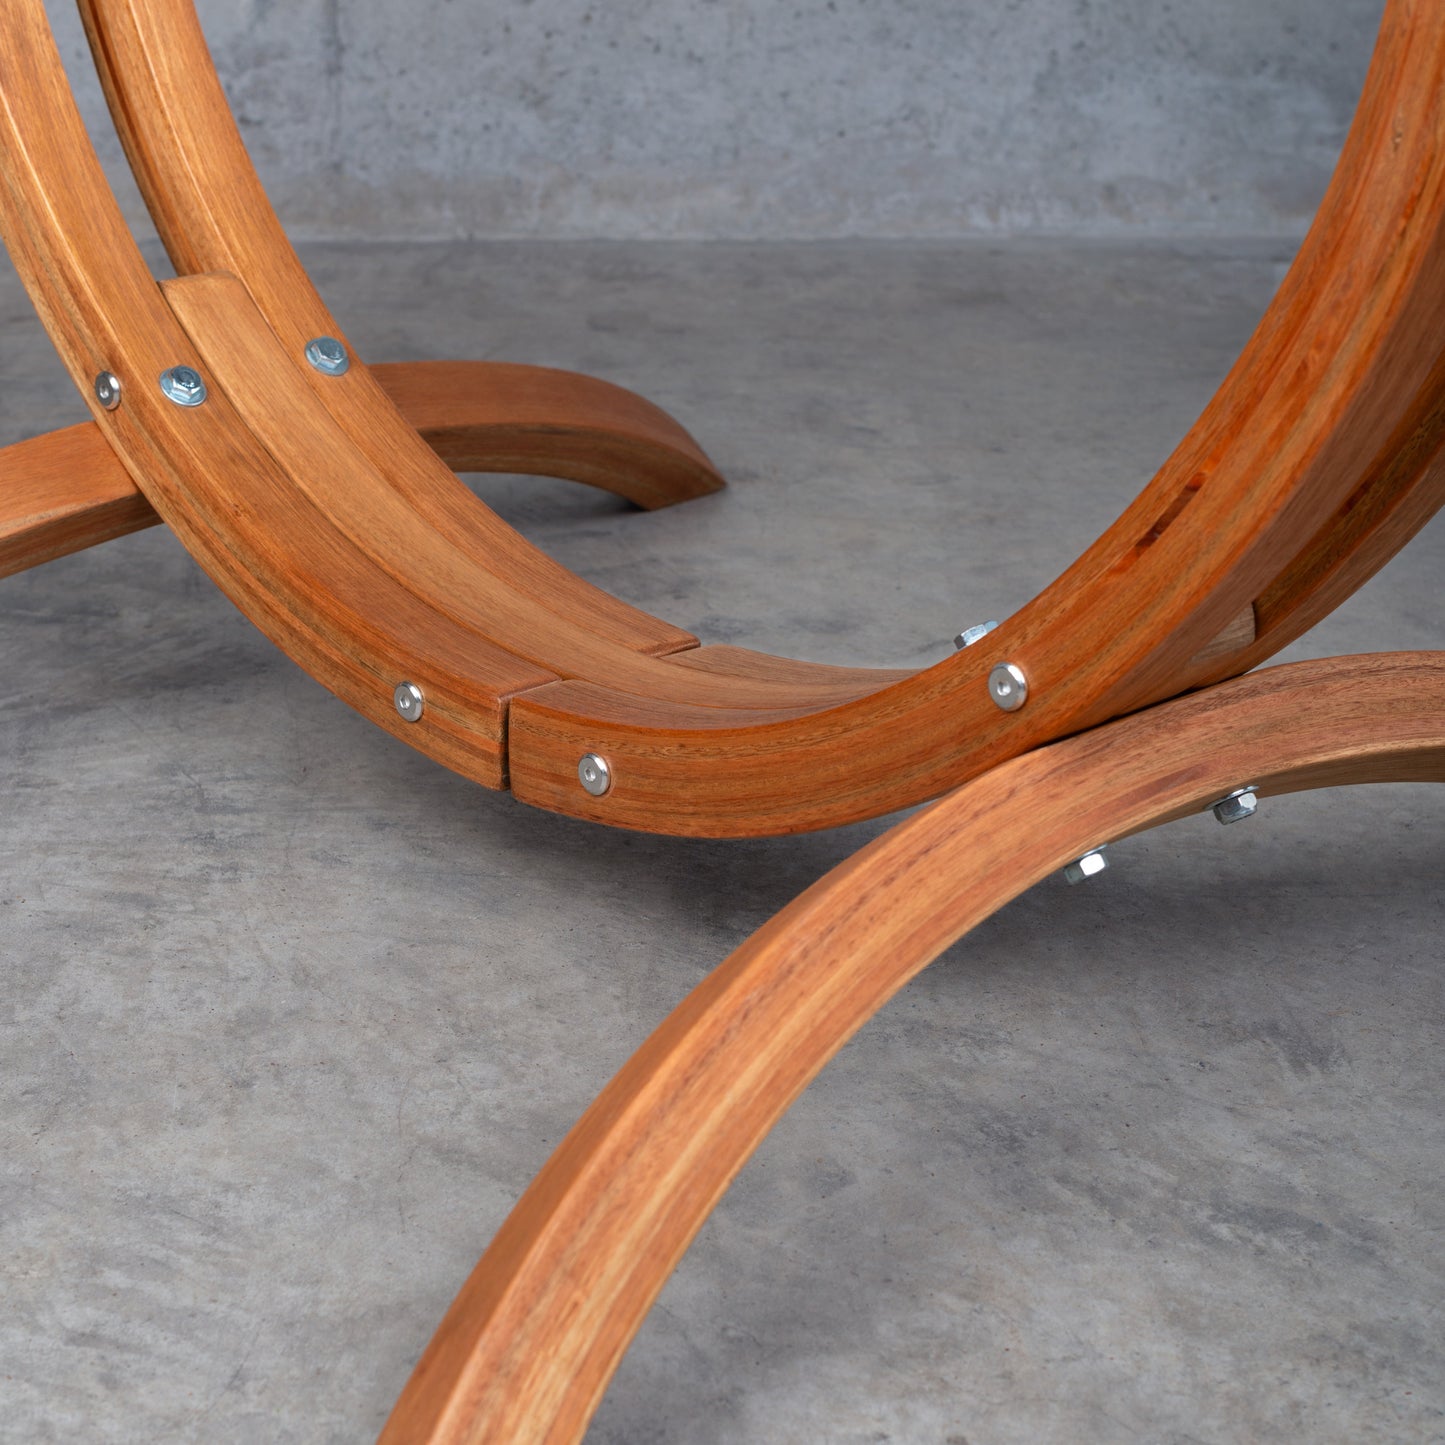 Udine Outdoor Almond - Hangstoel voor buiten met frame van eucalyptus met FSC®-certificaat